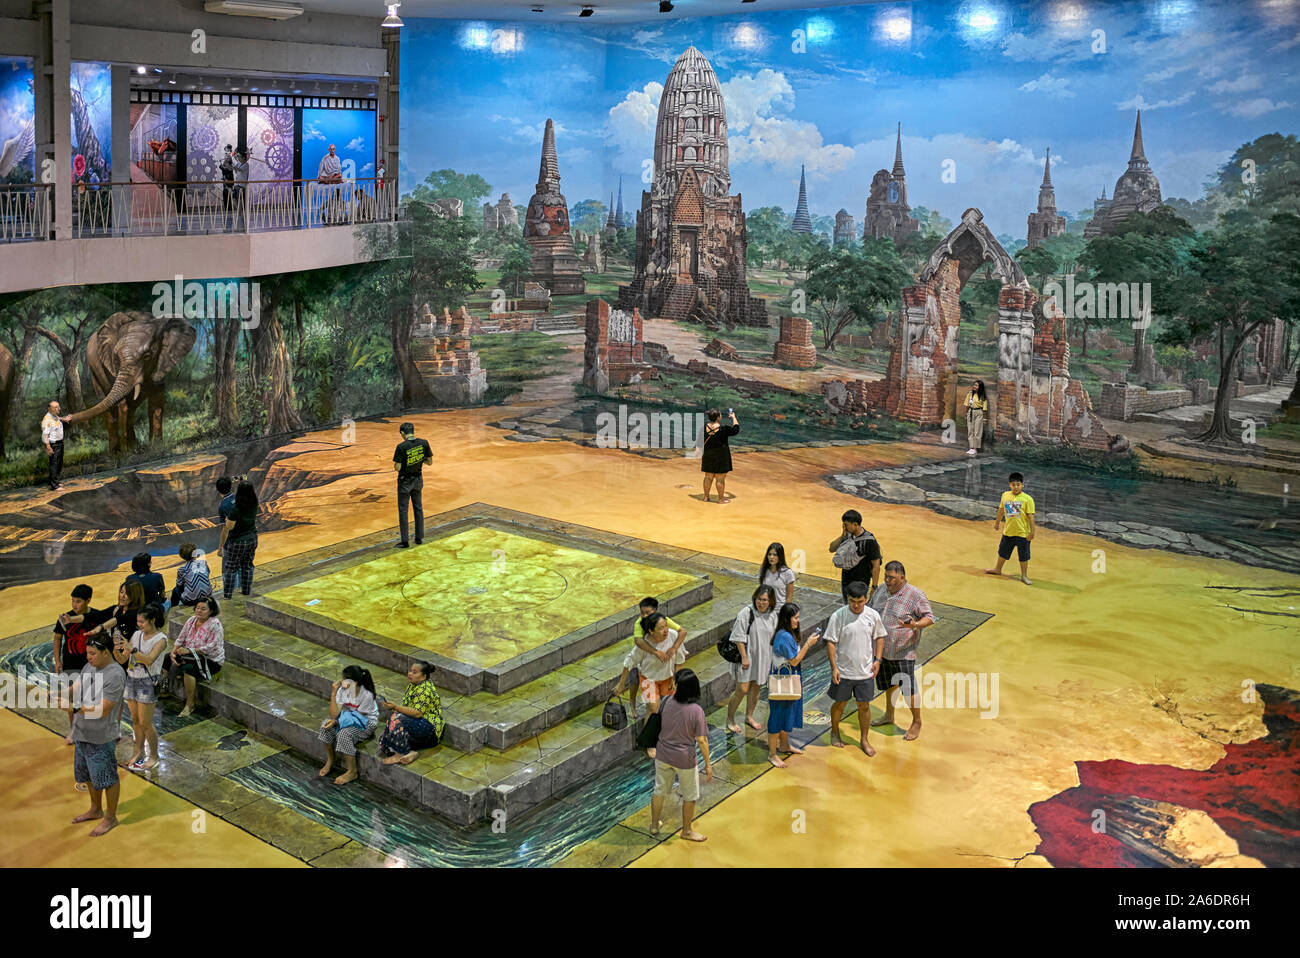 Astuce parodie art museum intérieur avec des personnes regardant art Pattaya Thailande Asie du sud-est Banque D'Images